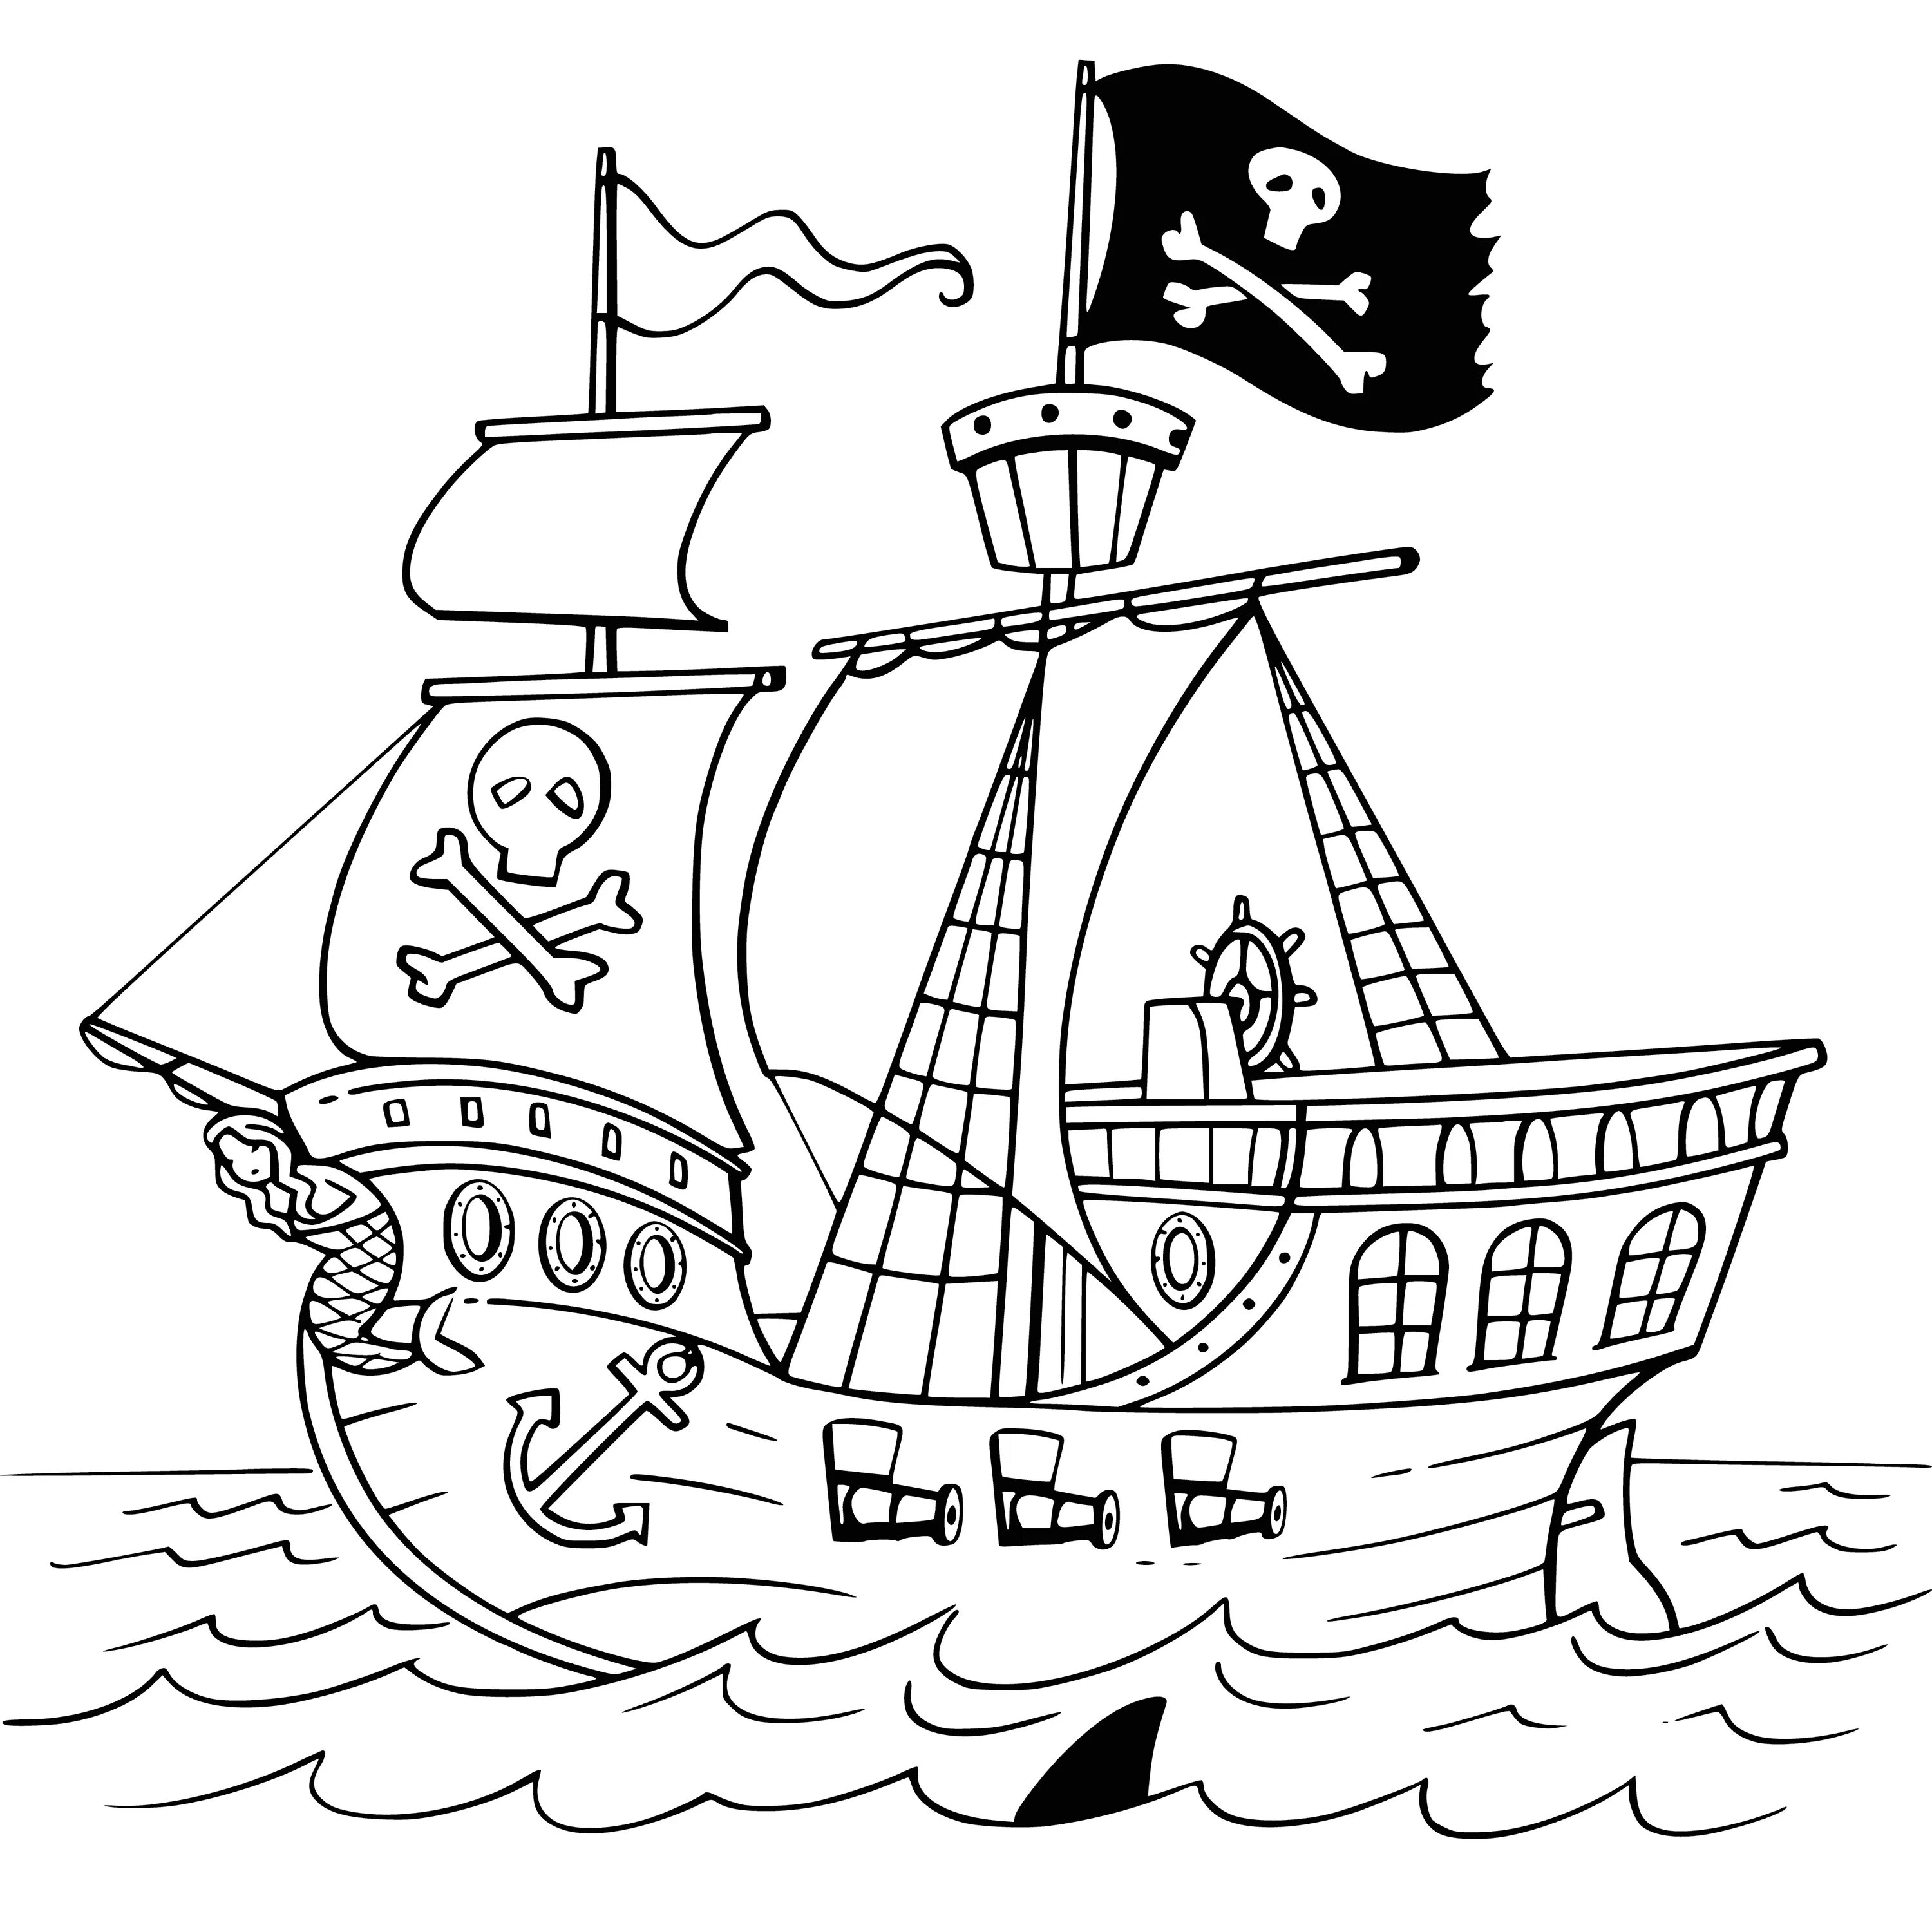 Уникальная страница раскраски пиратского корабля для детей